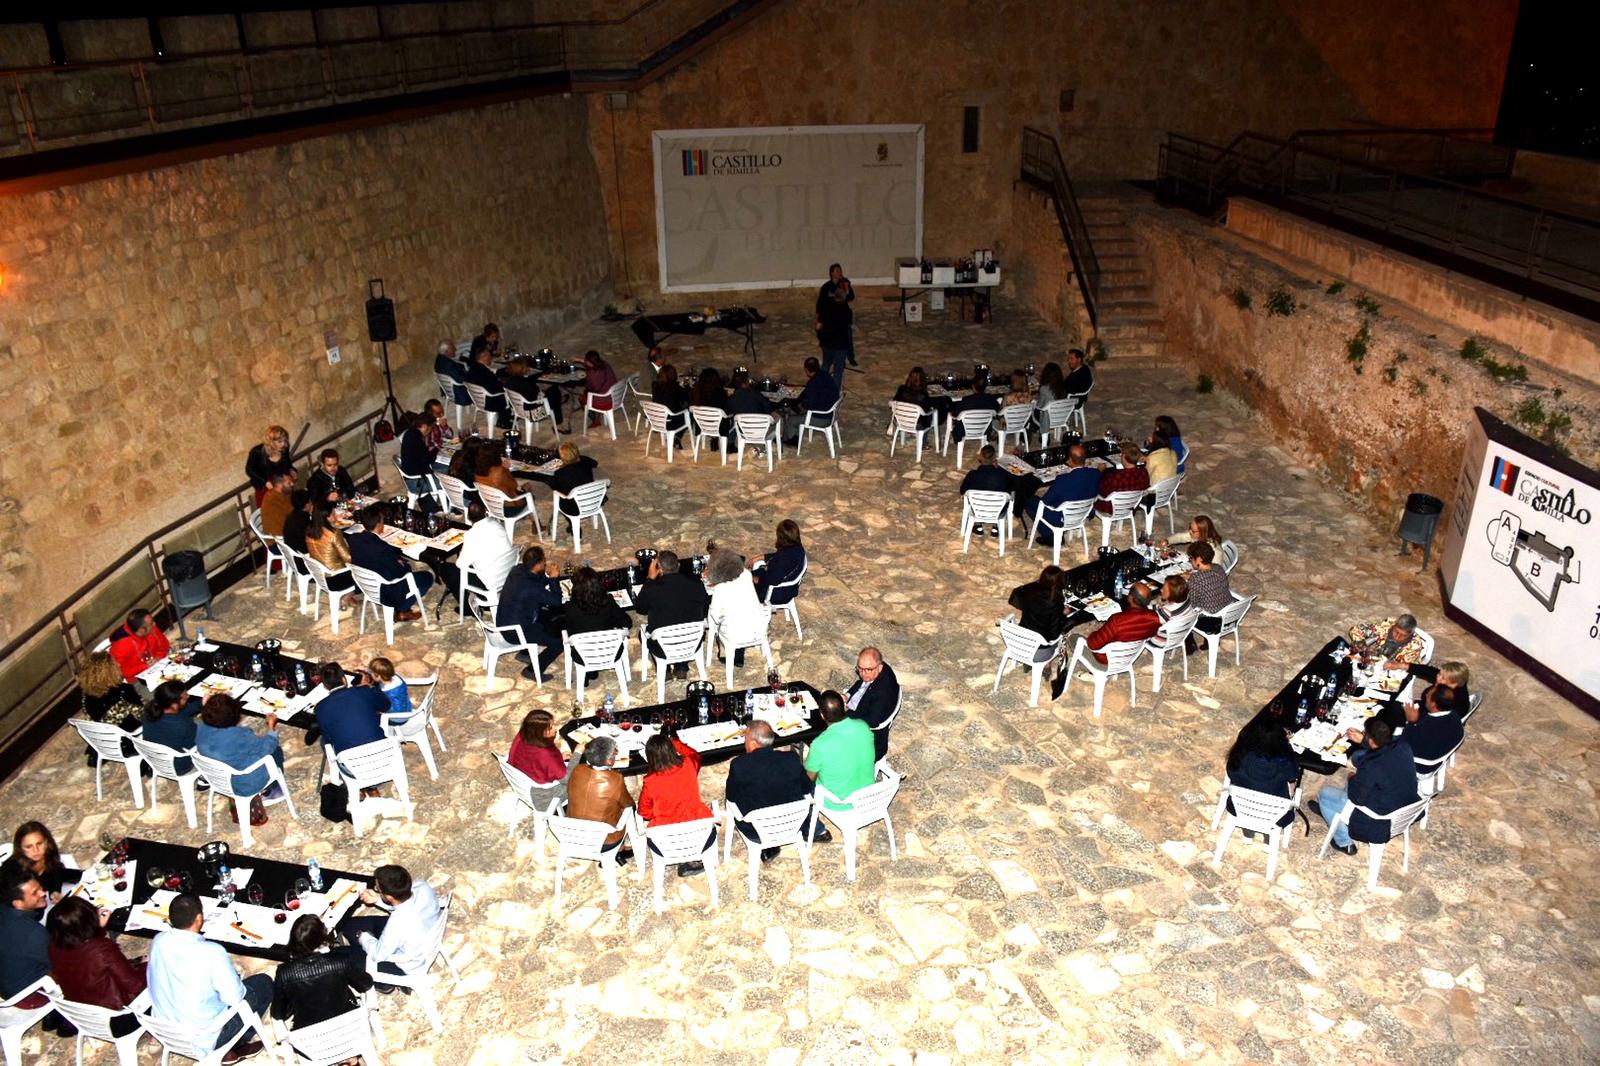 La Ruta del Vino congregó a más de sesenta personas en el Castillo para maridar vinos y quesos